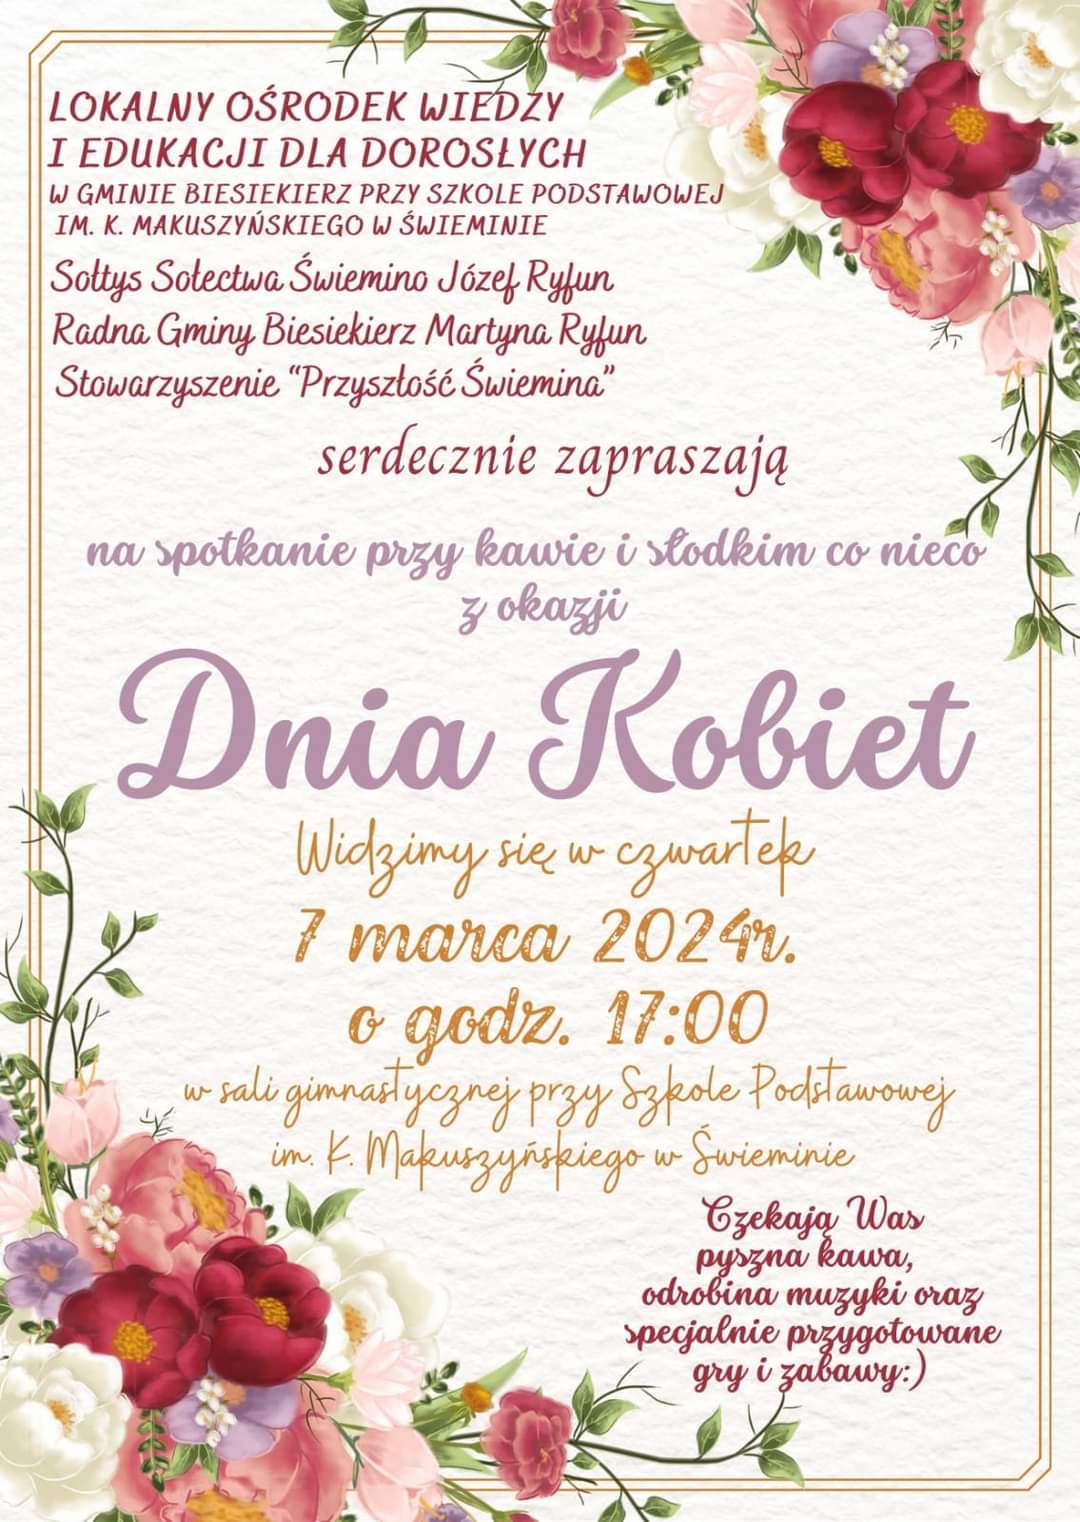 Plakat z zaproszeniem na Dzień Kobiet w Świeminie gmina Biesiekierz 7 marca 2024